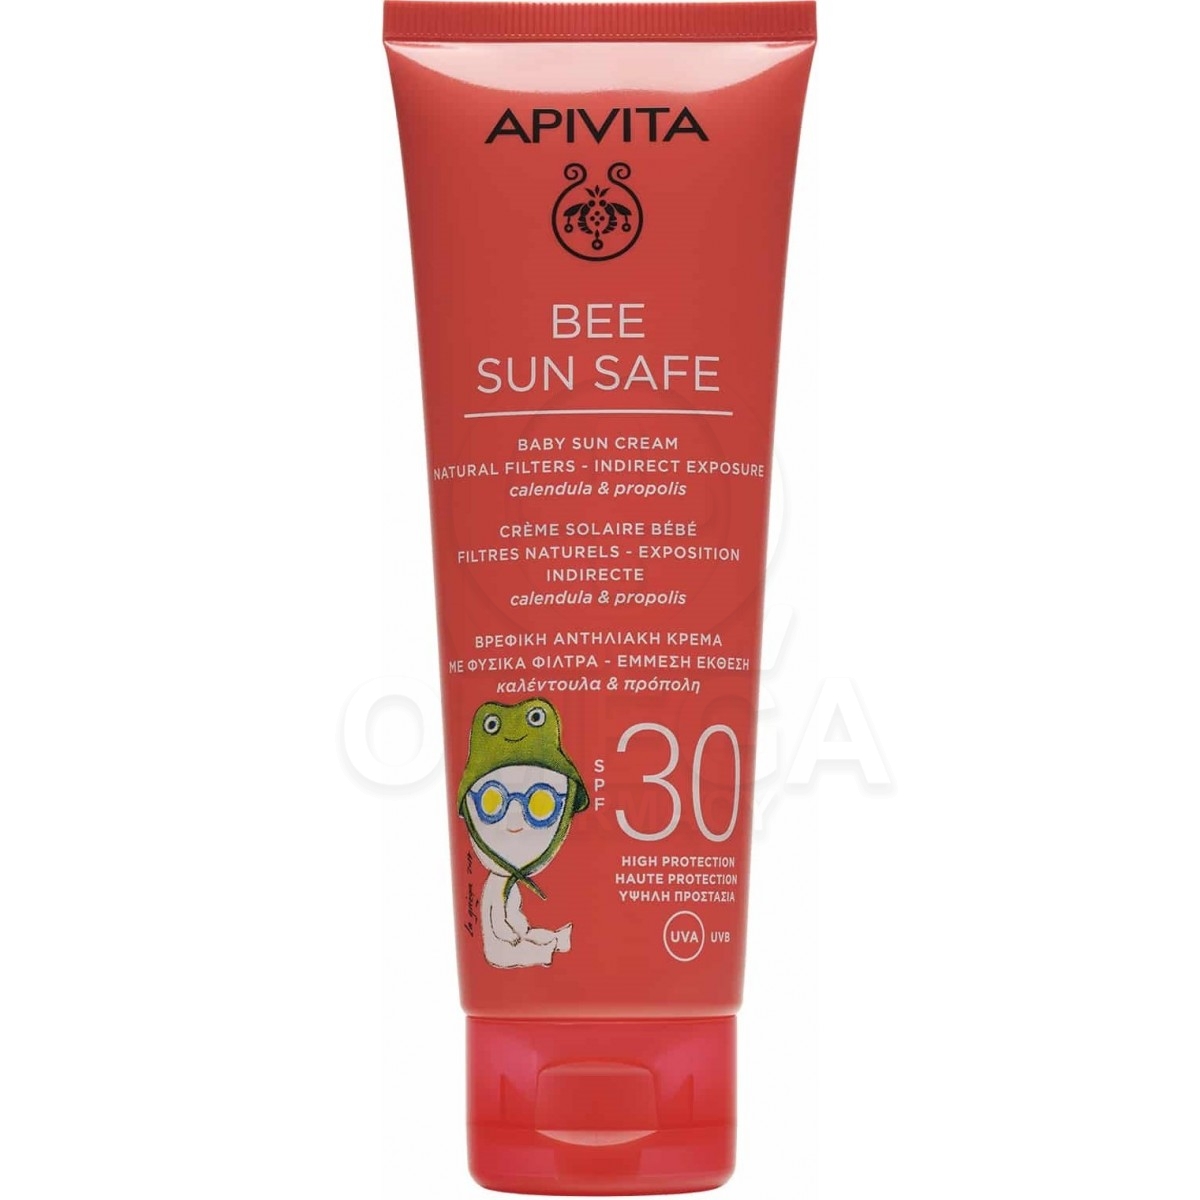 Αντιηλιακή προστασία παιδιού - APIVITA Baby Sun Cream Βρεφική Αντηλιακή  Κρέμα με Φυσικά Φίλτρα - Έμμεση Έκθεση, Καλέντουλα, Πρόπ